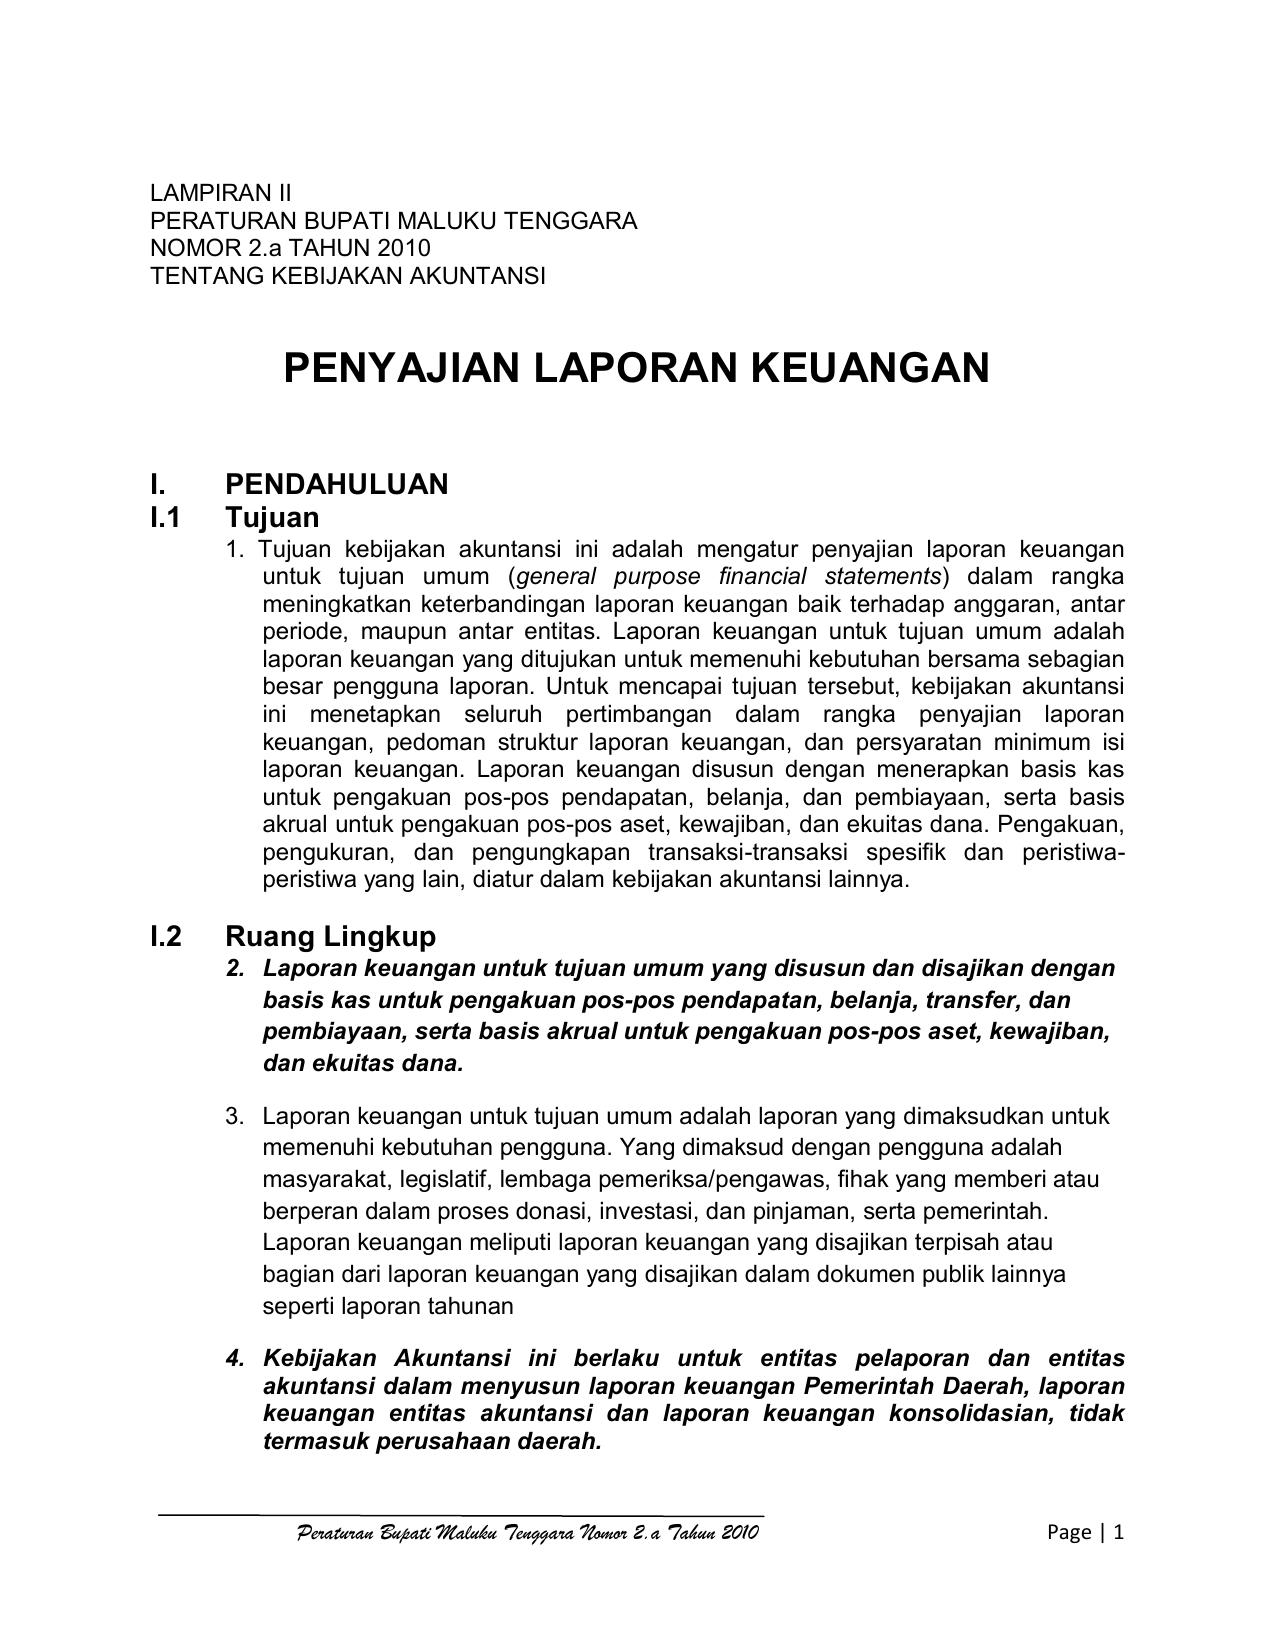 Penyajian Laporan Keuangan Bpk Ri Perwakilan Provinsi Maluku